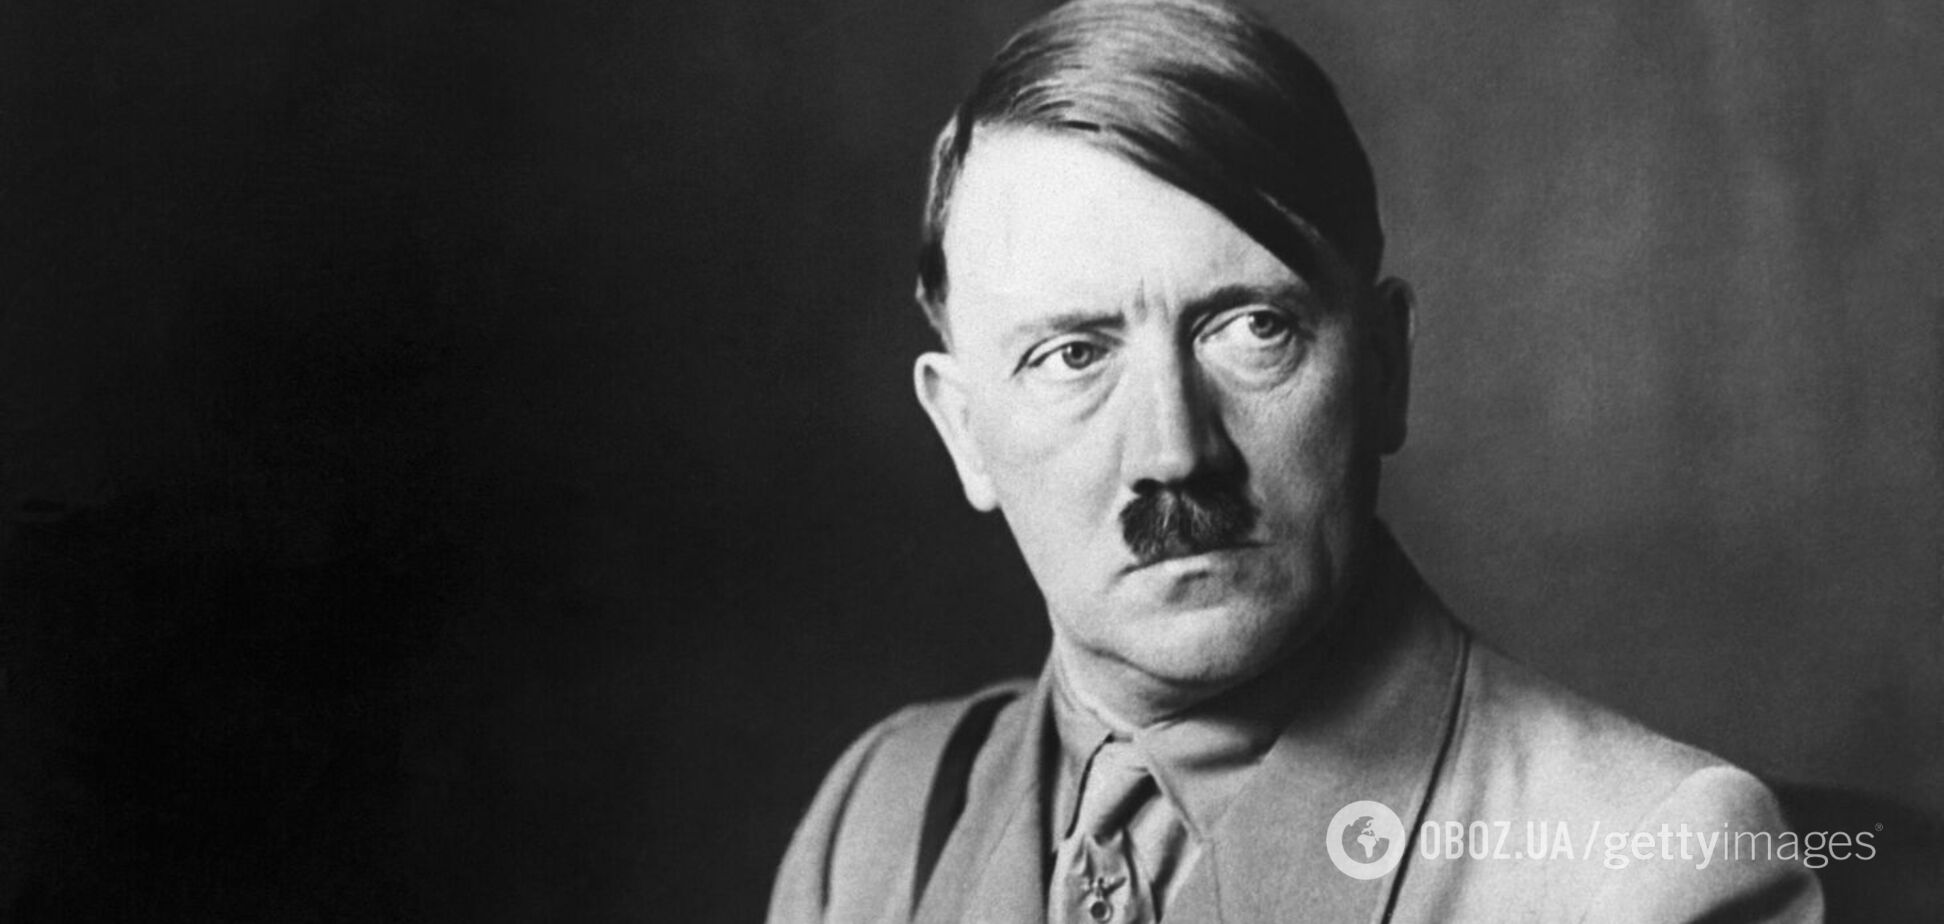 Гітлер обожнював тварин, вживав наркотики і був імпотентом. 10 шокуючих фактів про одного з найжорстокіших катів світу